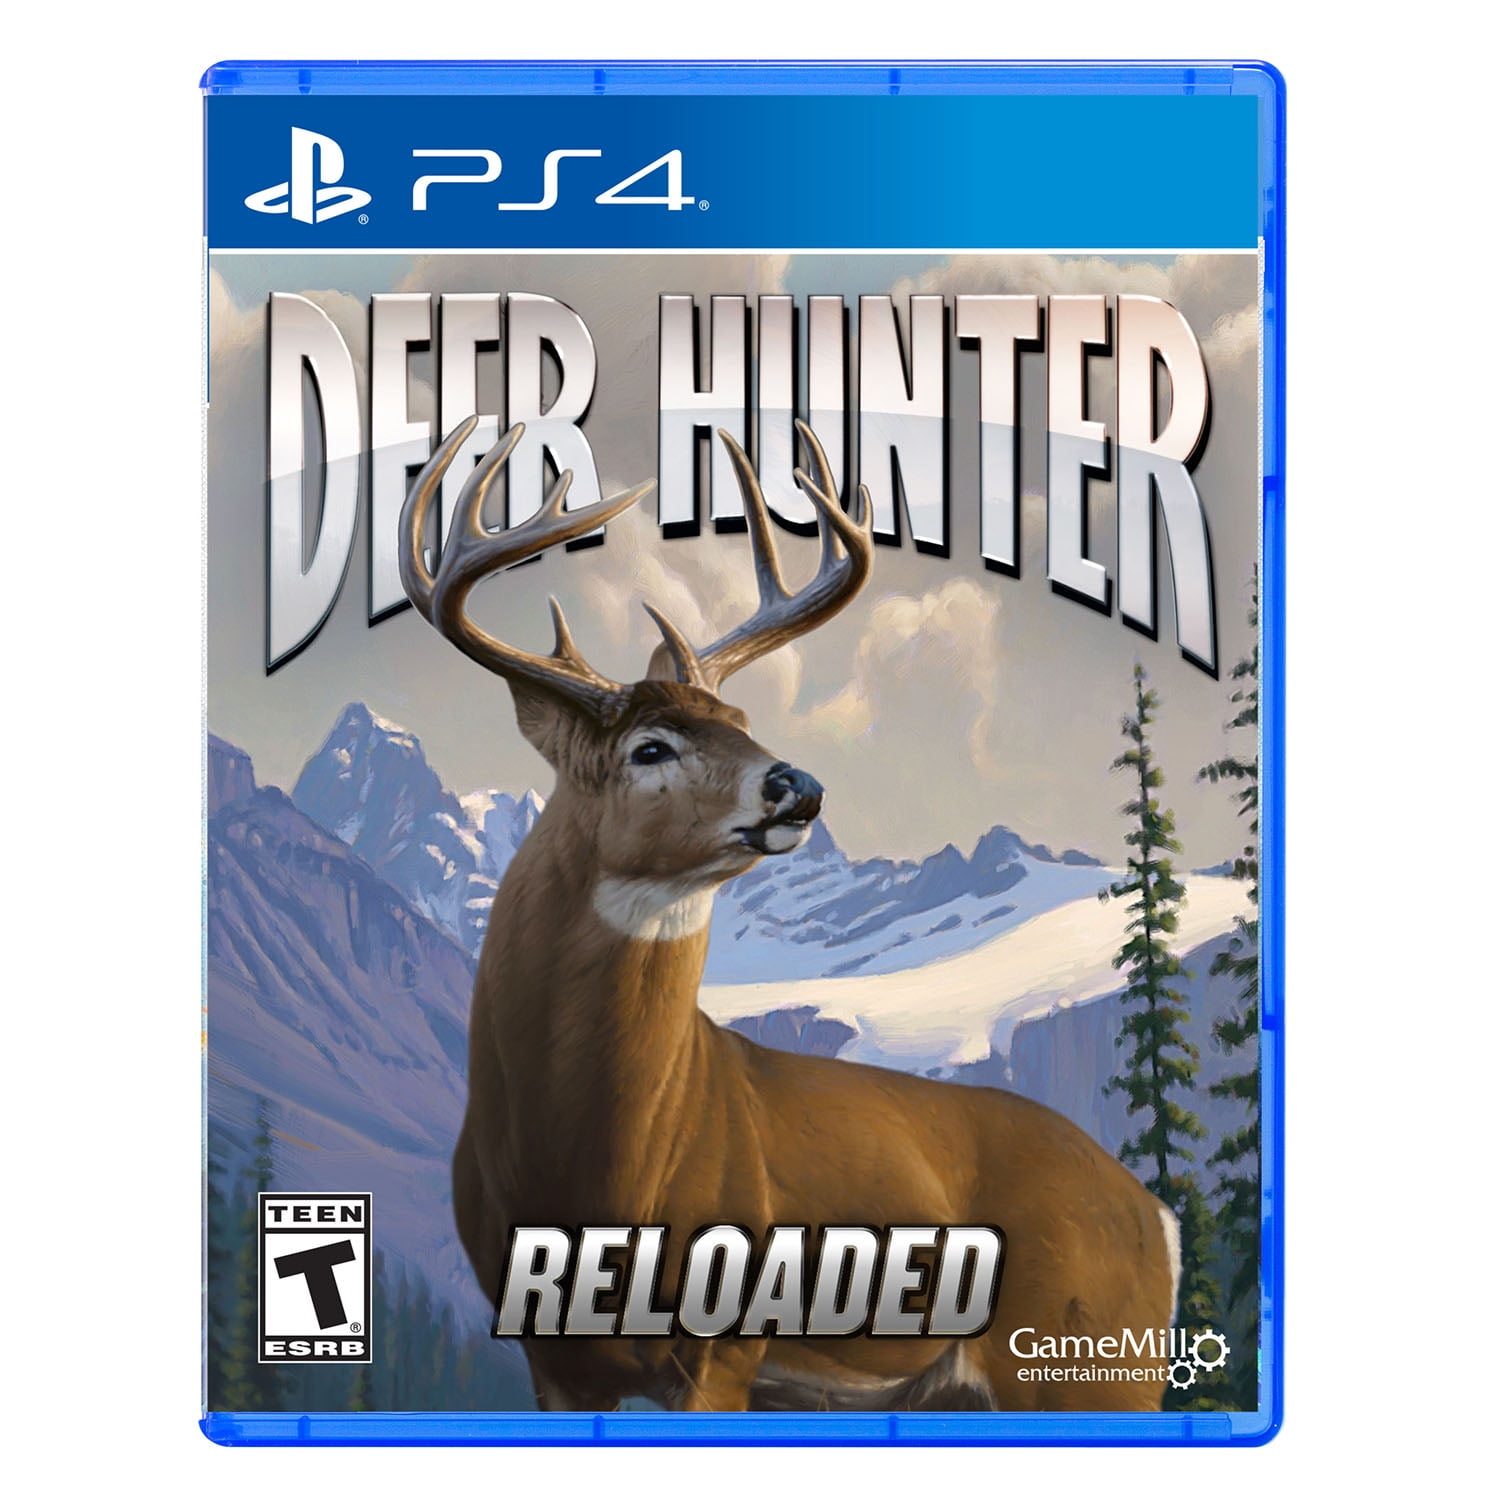 GAMEMILL ENTERTAINMENT Deer Hunter Reloaded (PS4)